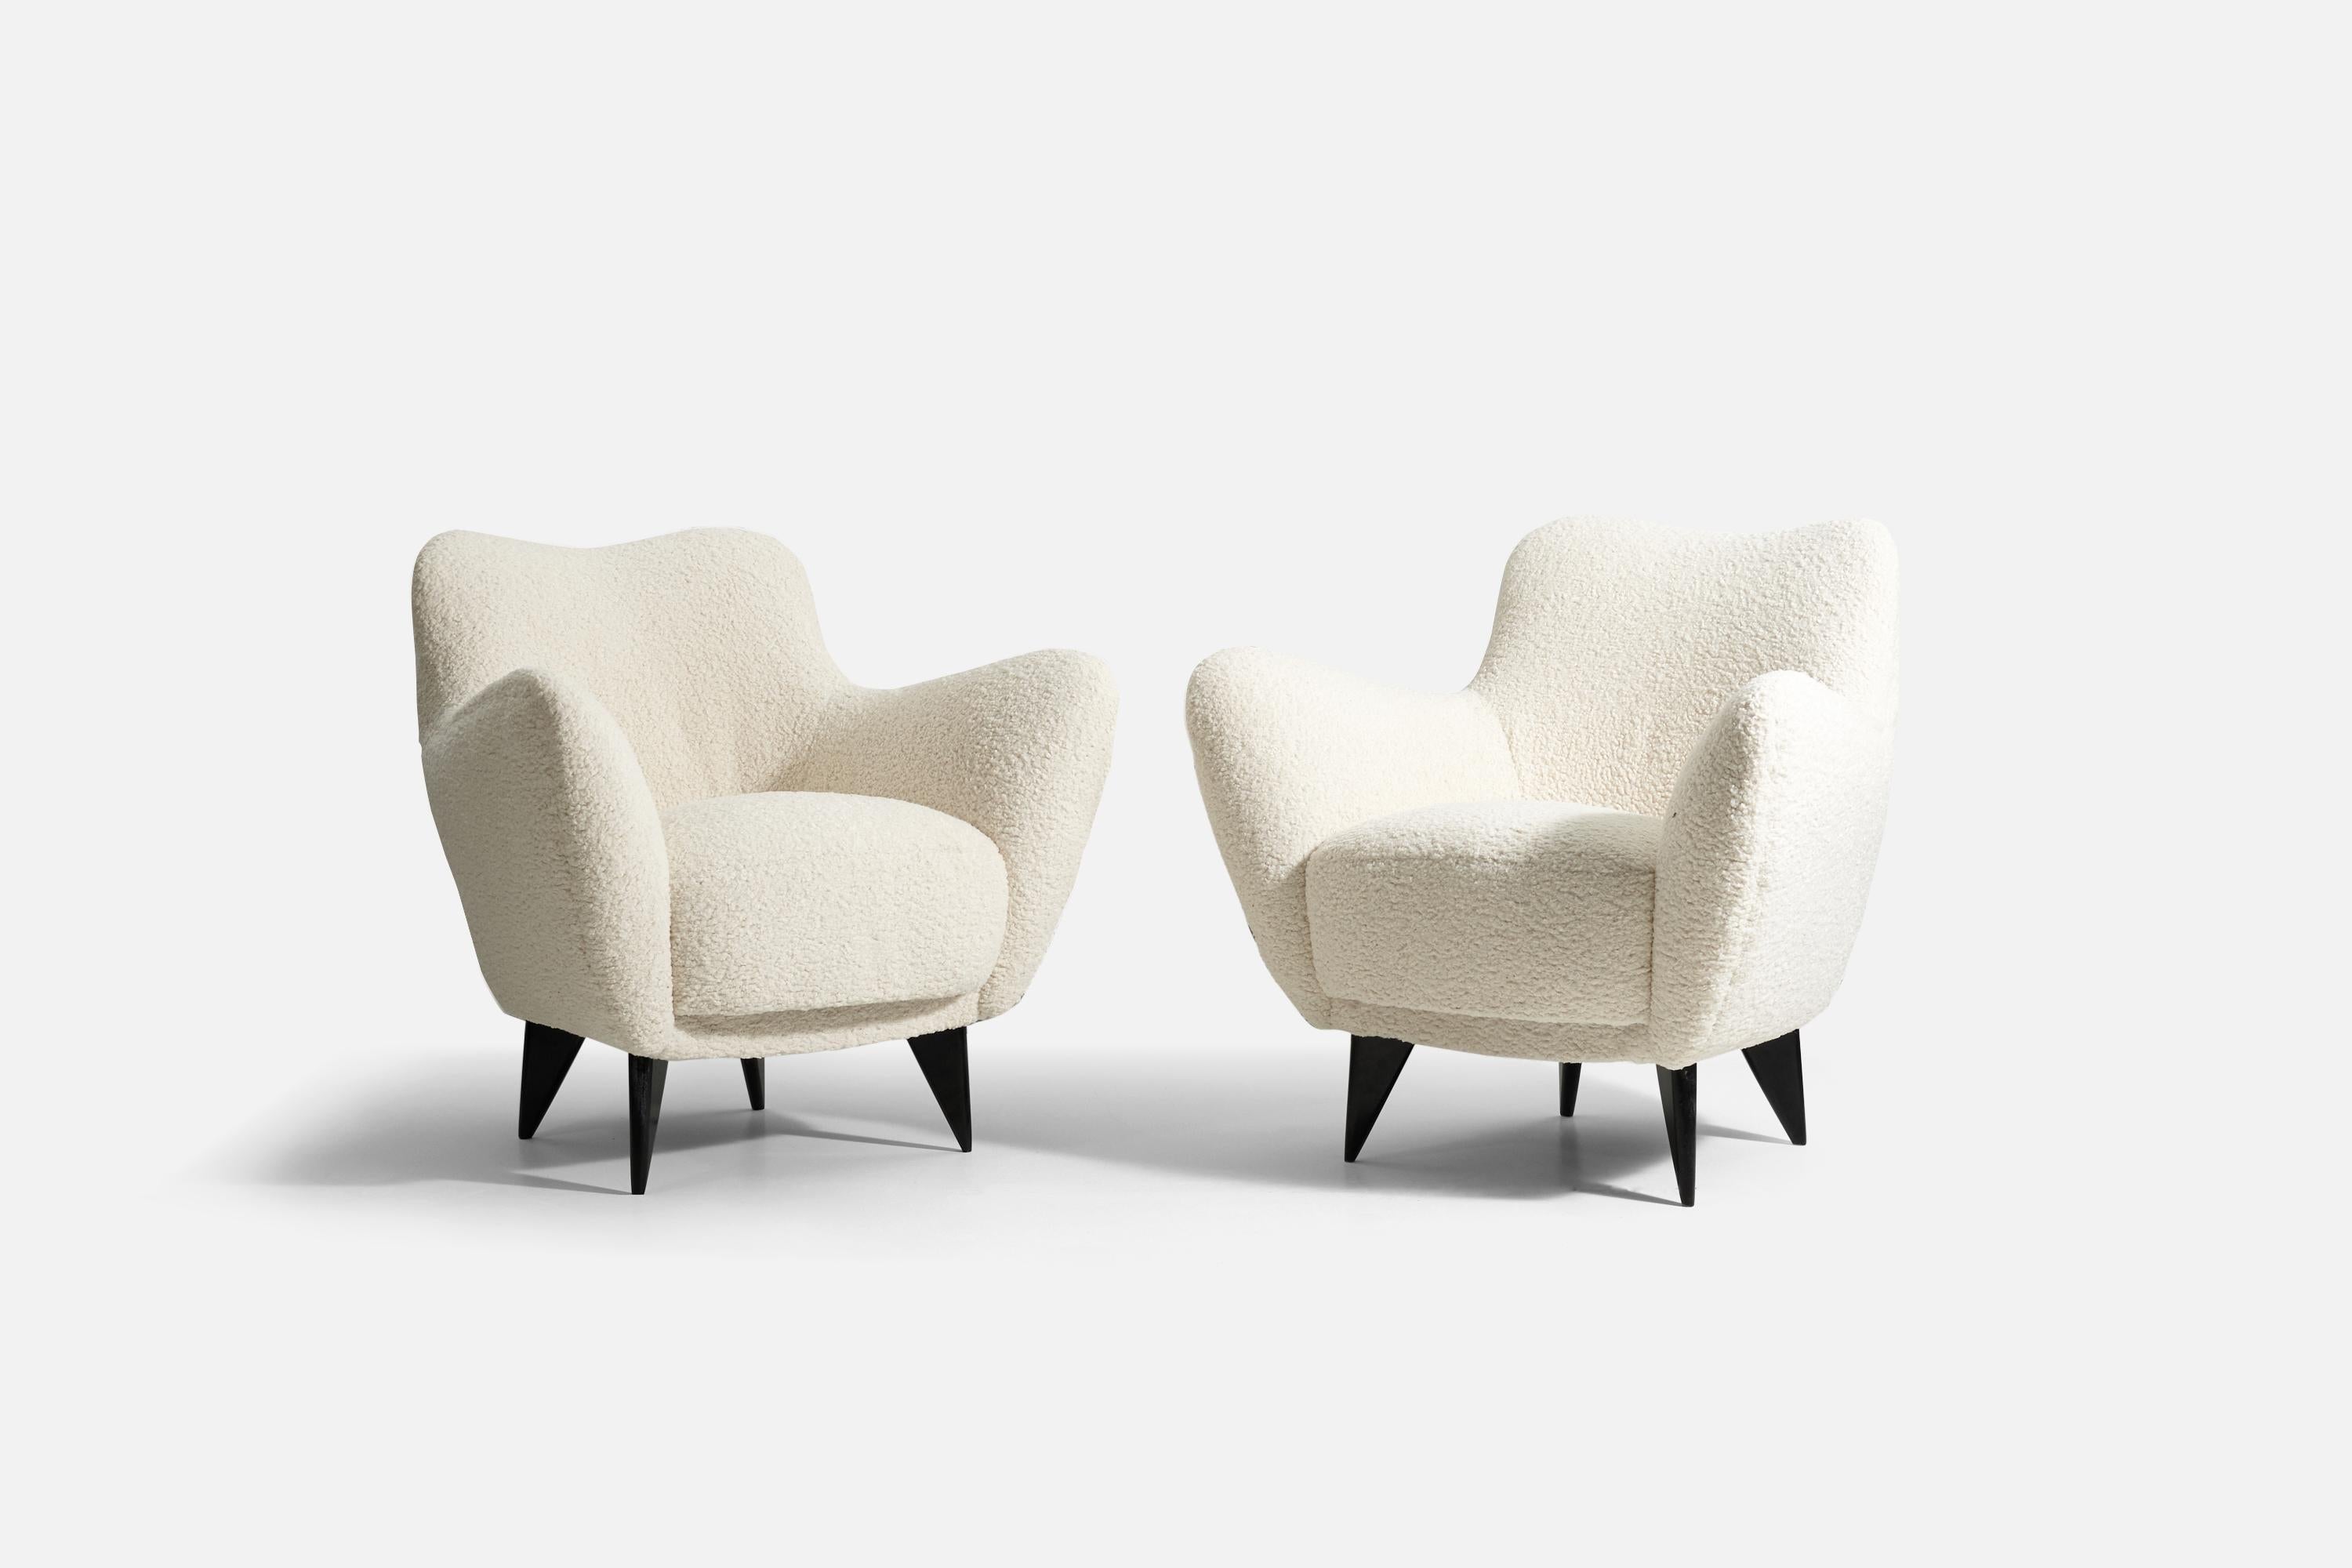 Une paire de chaises longues organiques, conçues par Guglielmo Veronesi pour ISA Bergamo, Italie, années 1950. Nouvellement retapissé dans un tissu bouclé blanc.

 